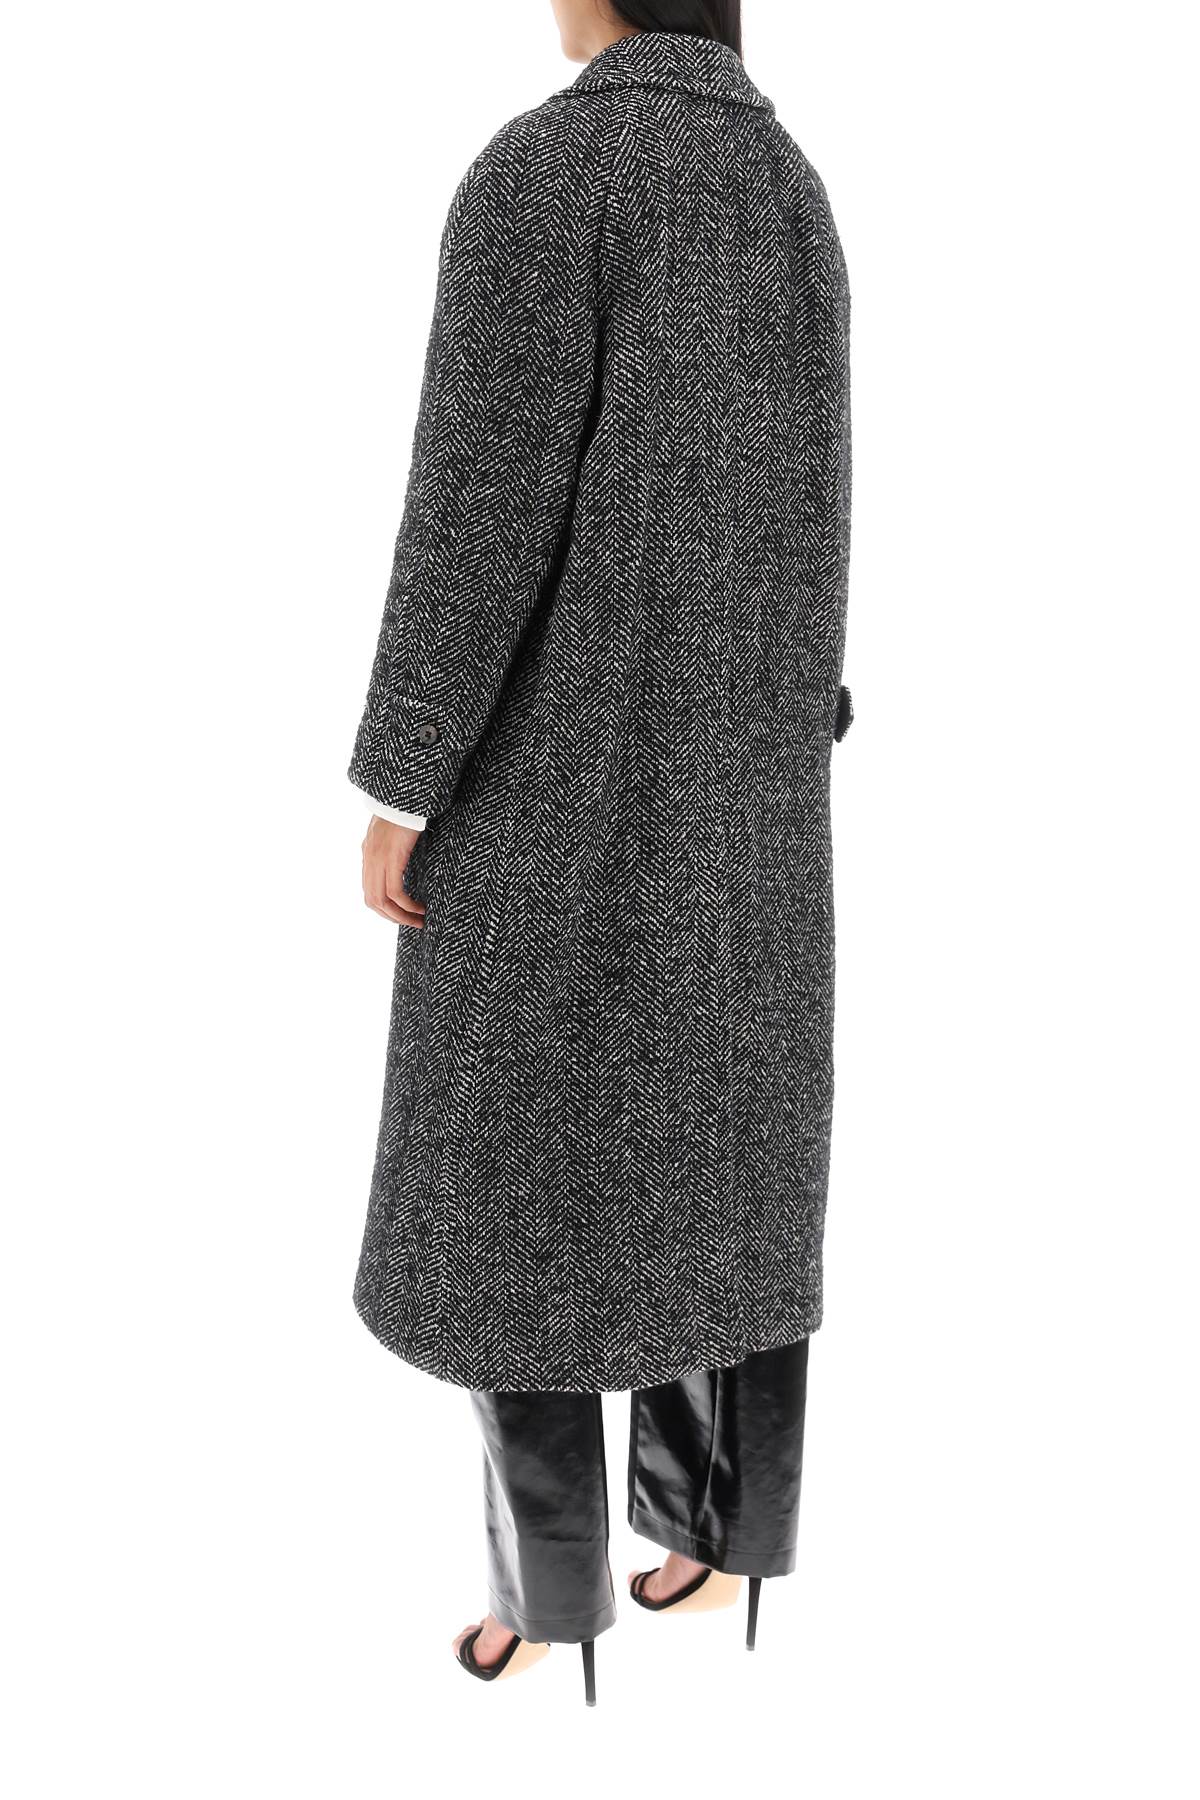 Mvp wardrobe oversized herringbone coat-2